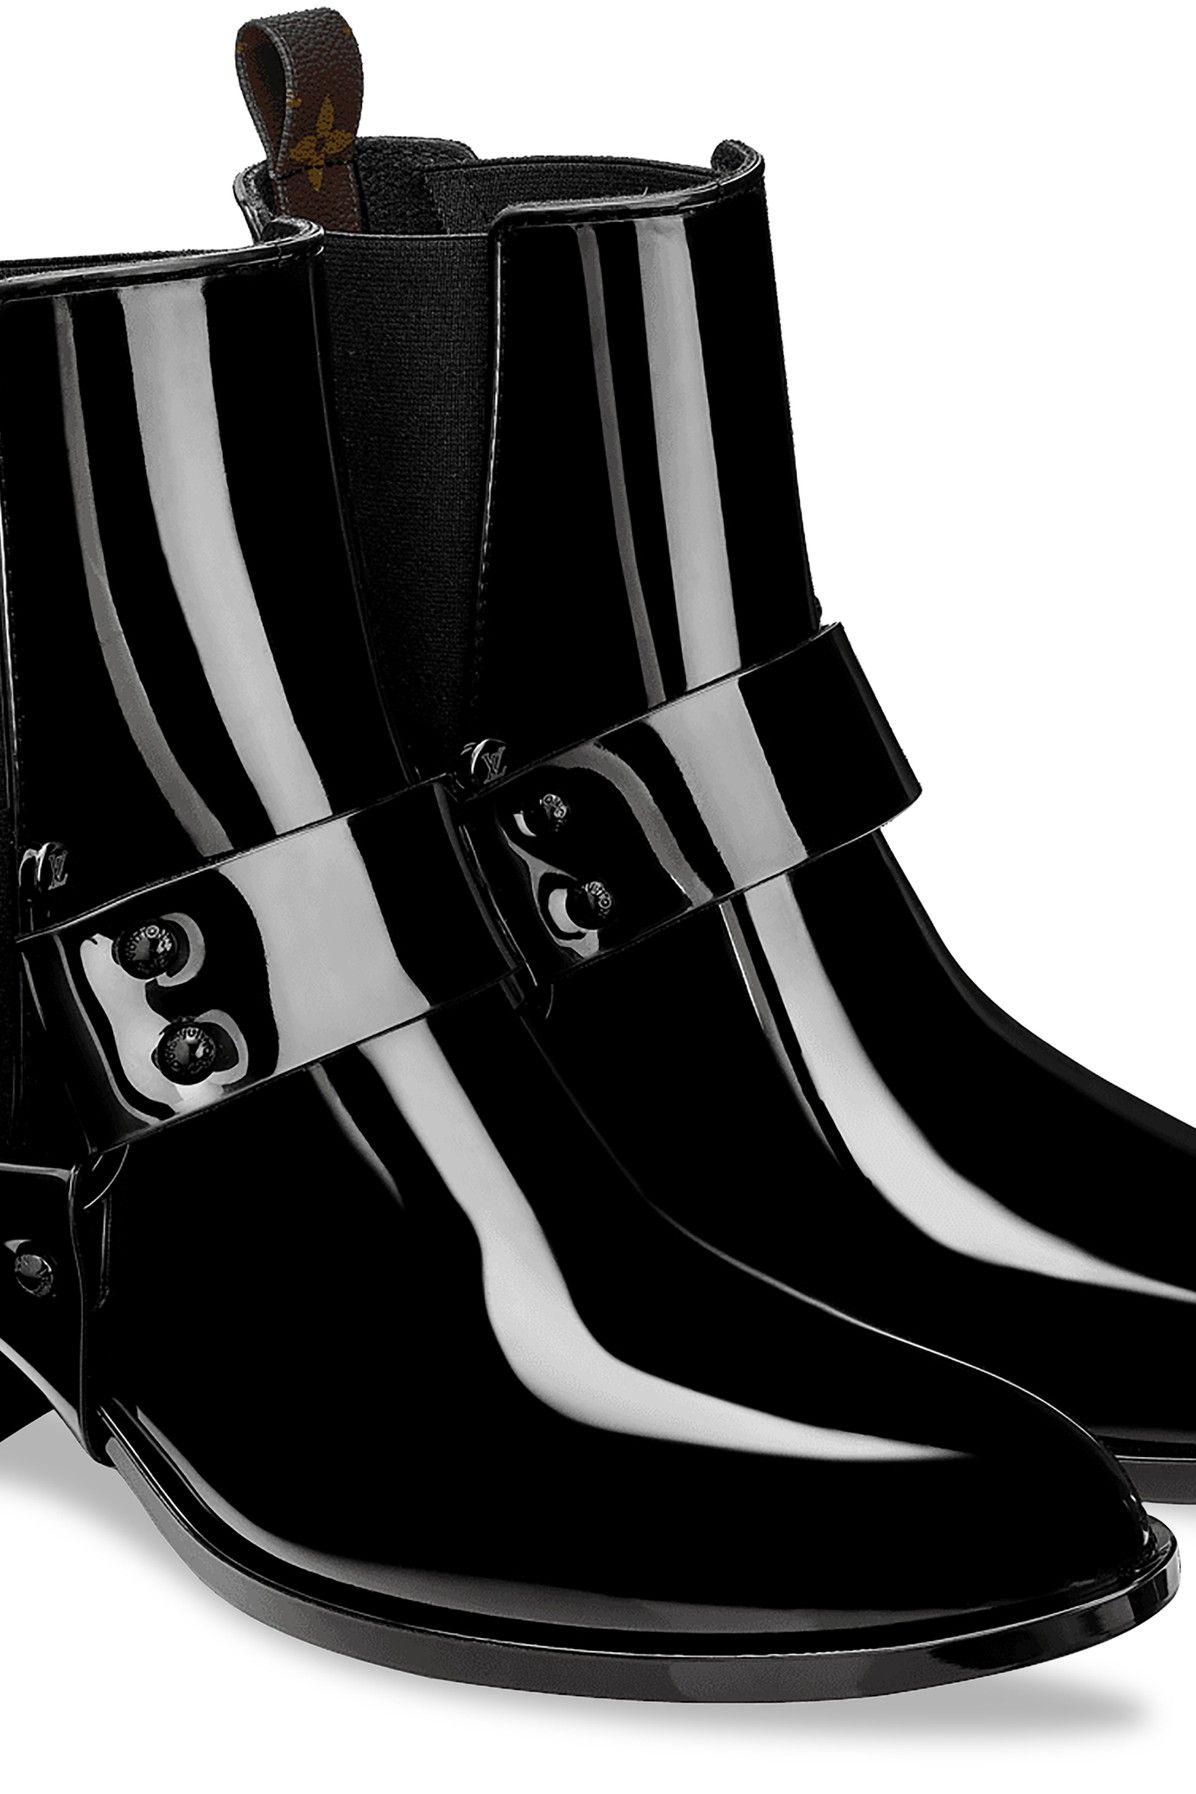 Louis Vuitton Rhapsody Ankle Boot in Black